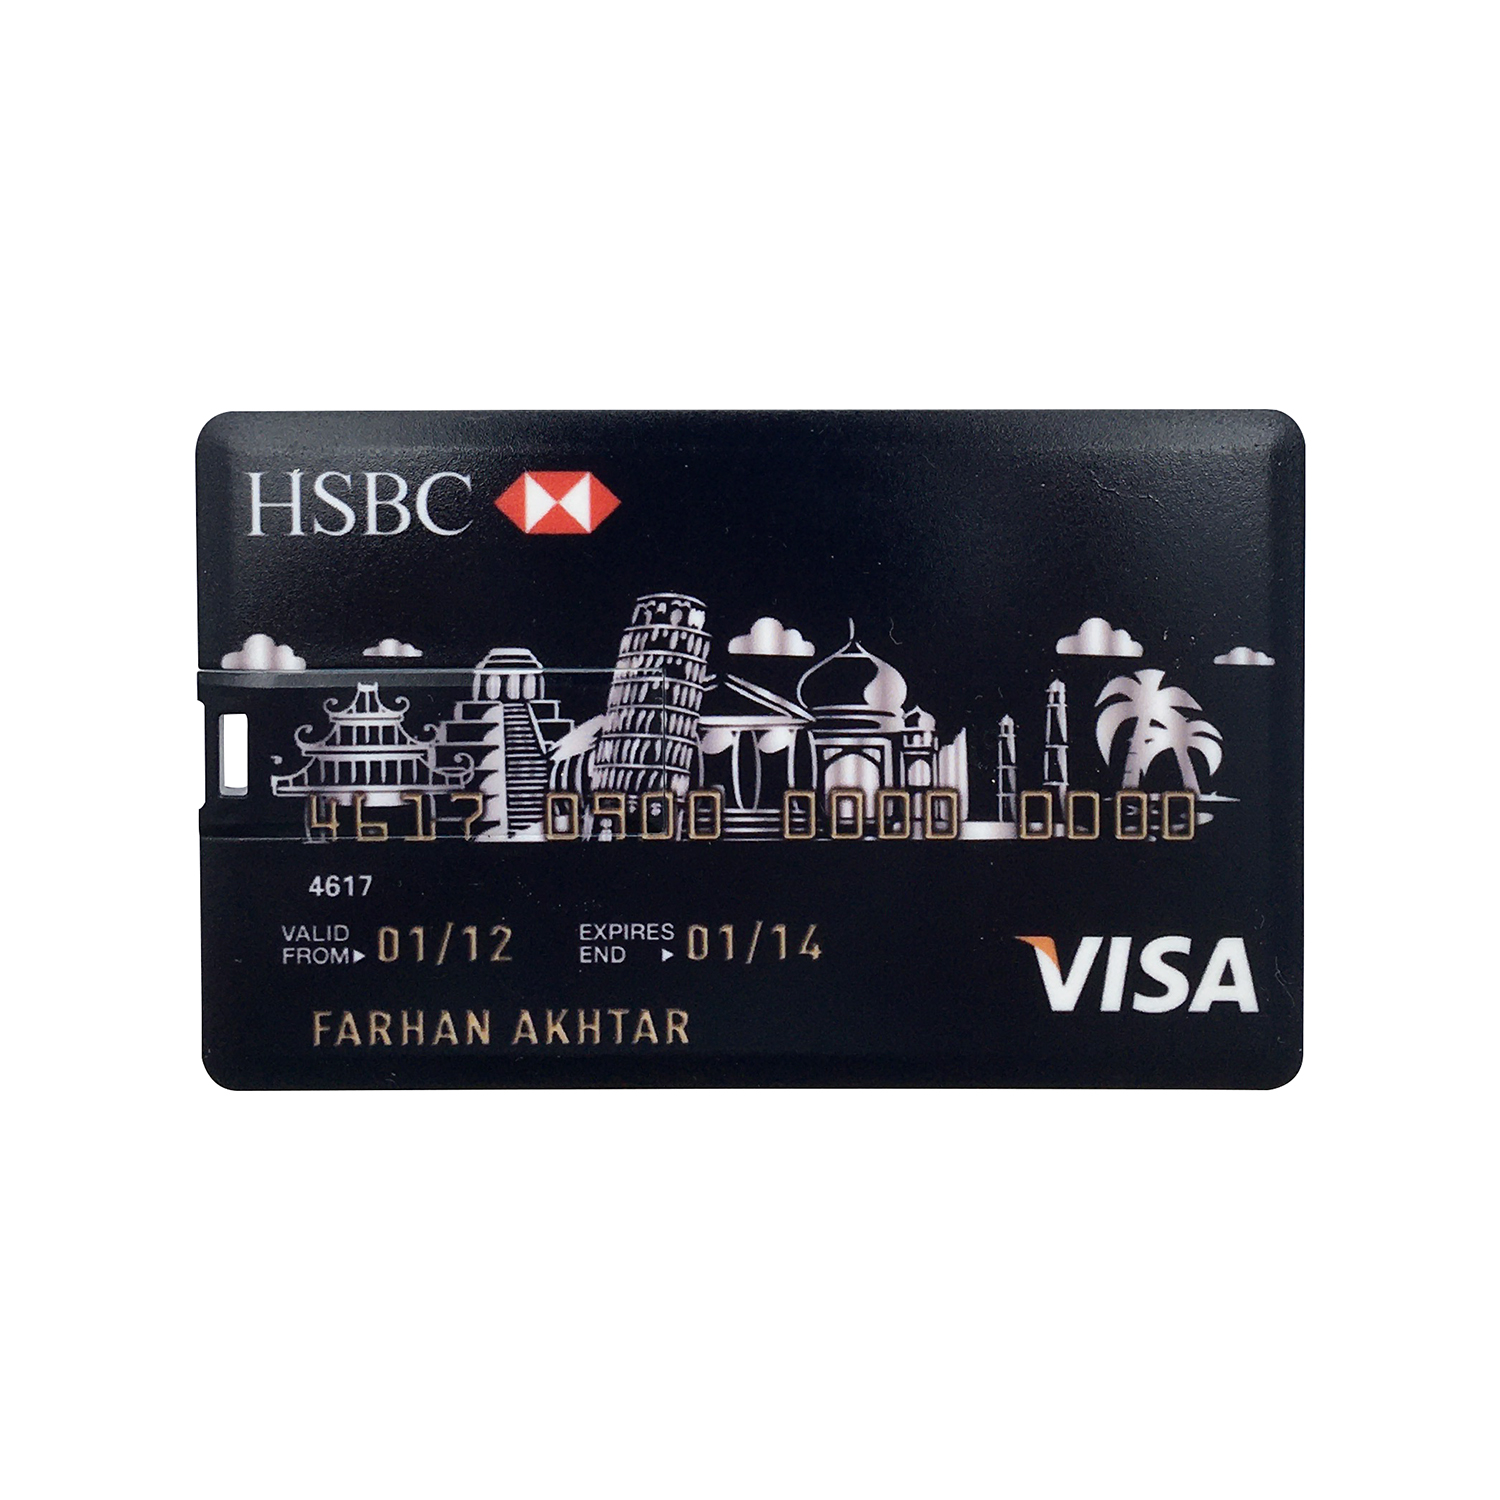 فلش مموری طرح ویزا کارت مدل HSBC ظرفیت 8گیگابایت